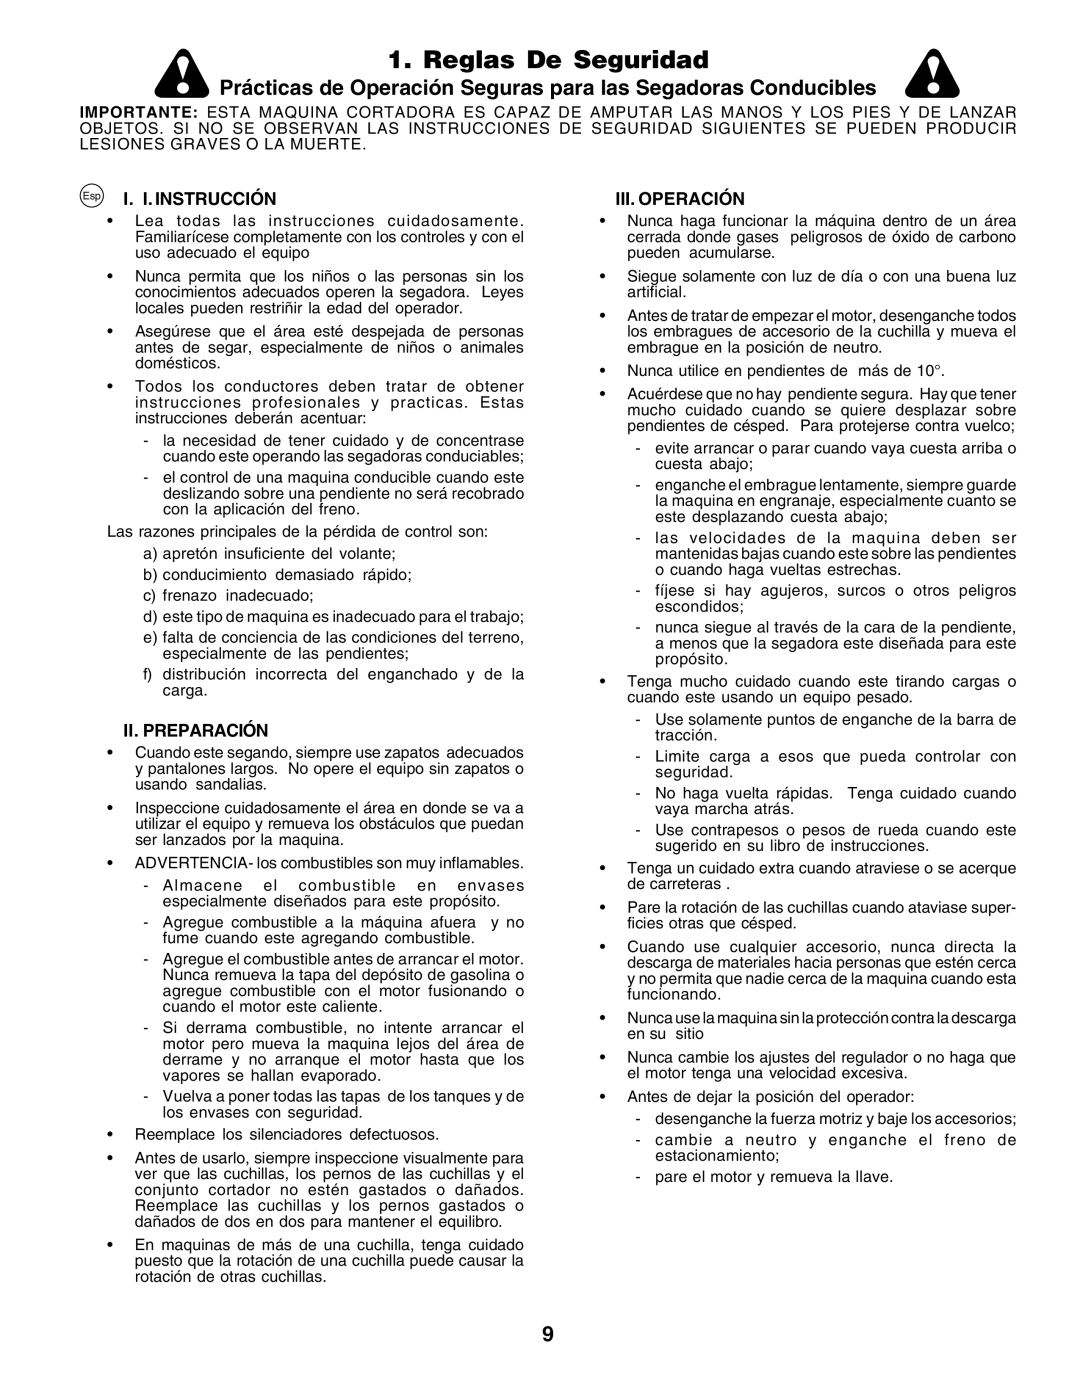 Husqvarna GTH250 Reglas De Seguridad, Prácticas de Operación Seguras para las Segadoras Conducibles, I. I. Instrucción 